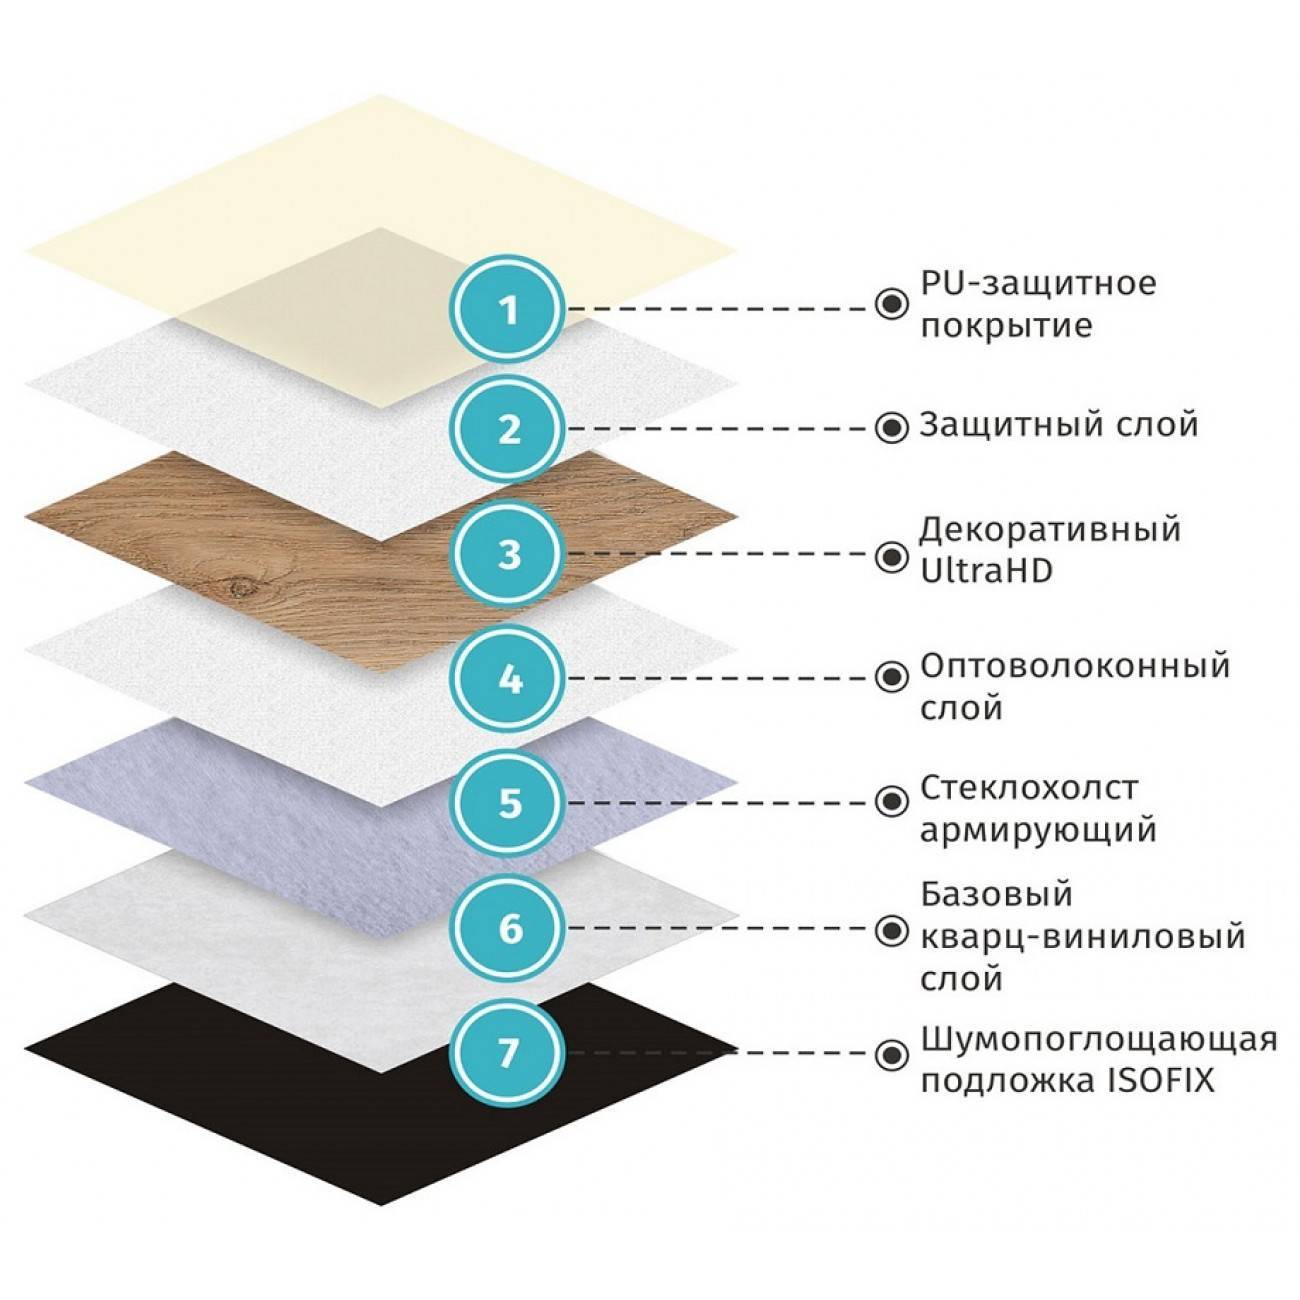 Ламинат или пвх плитка: что лучше | 5domov.ru - статьи о строительстве, ремонте, отделке домов и квартир